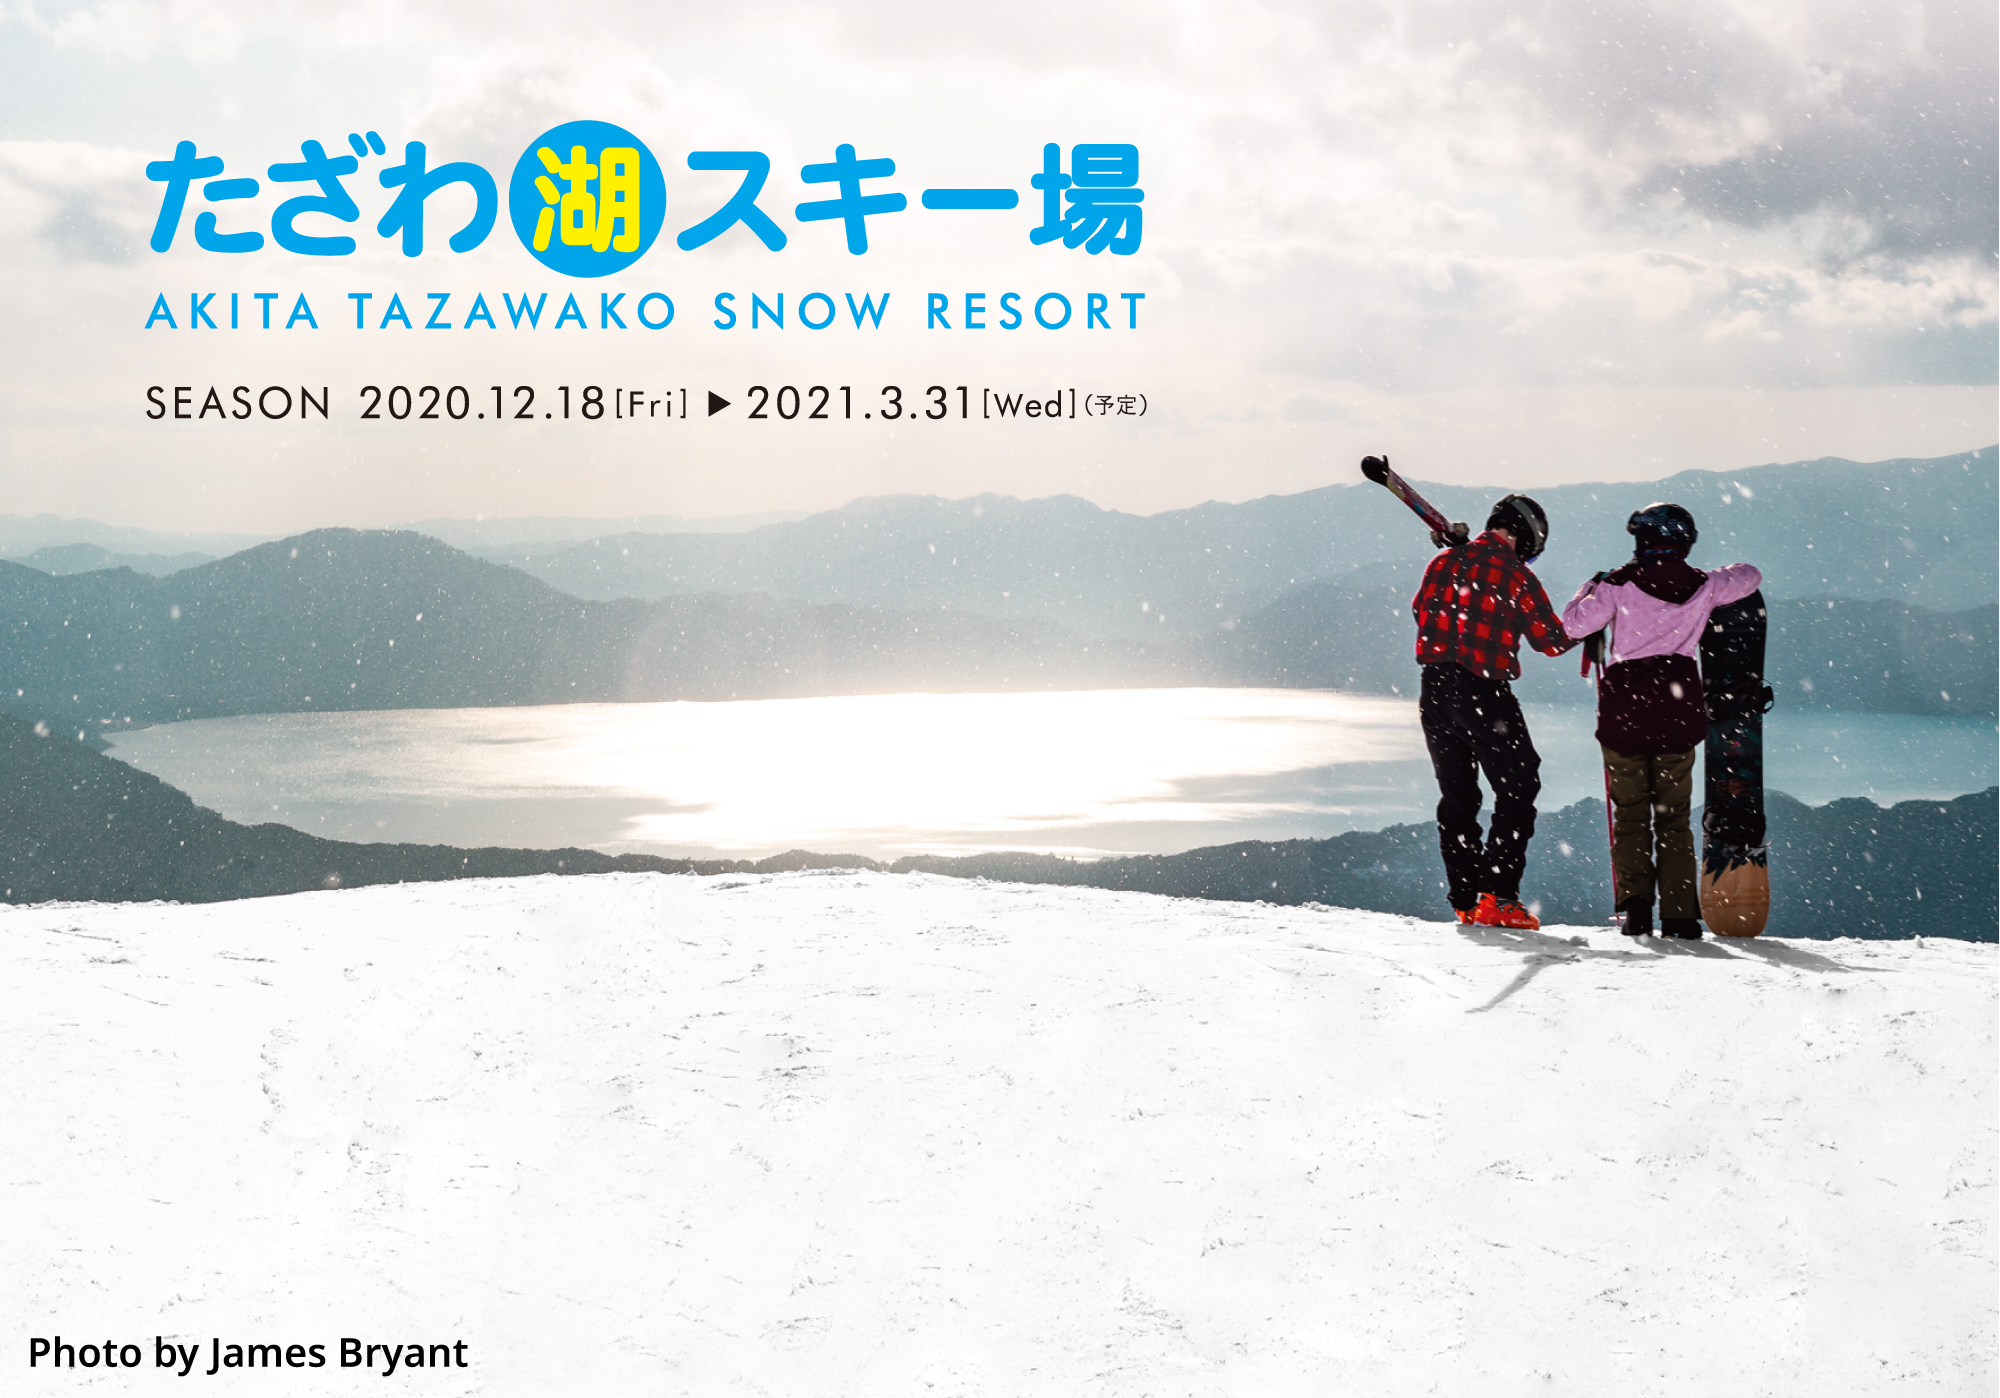 たざわ湖スキー場 田沢湖駅からバスで30分と好立地な 秋田県にある日本有数のスノーリゾートたざわ湖 広大なゲレンデから望む深さ日本一の湖の景観に圧倒されます 毎年新メニューが楽しみなこだわりのゲレンデ飯や新設ラウンジなど 満喫スポットがたくさん